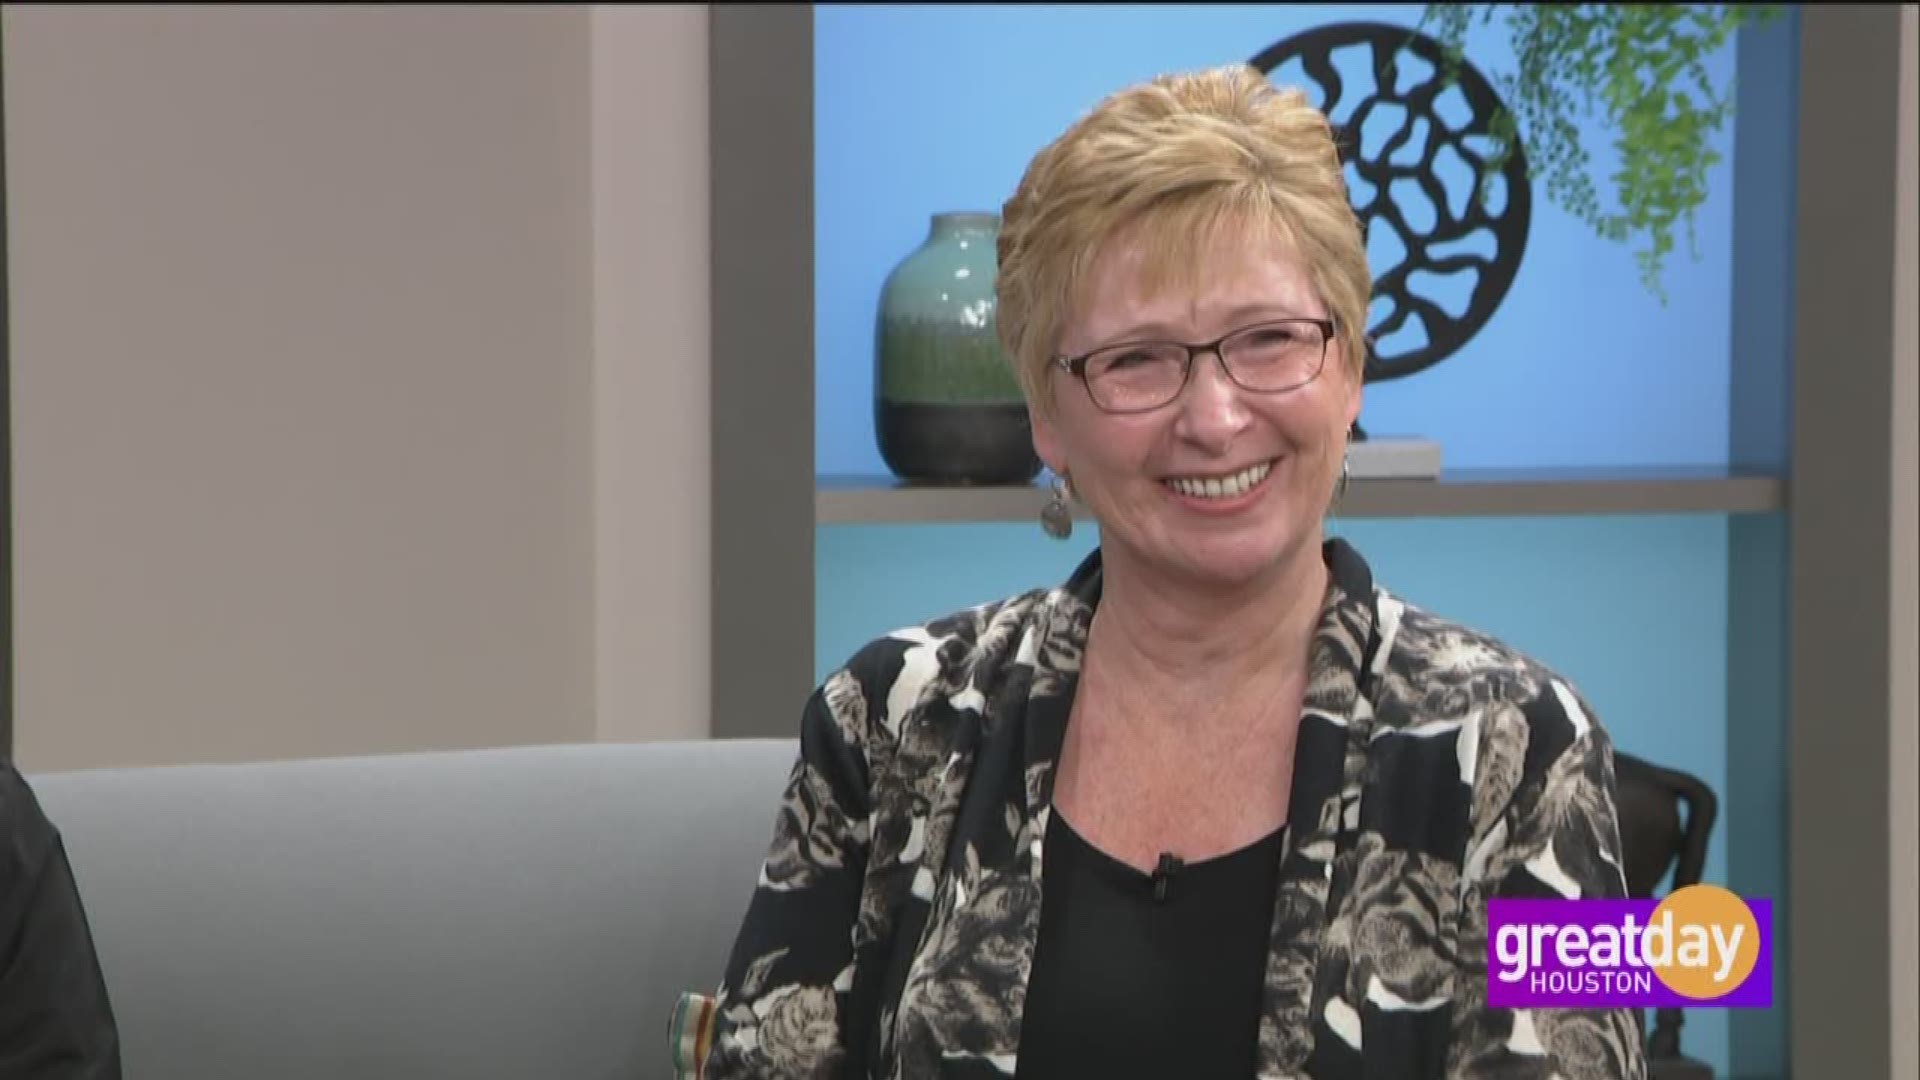 Hanna Dental Implant Center helped Deborah Dransfield get her smile back.